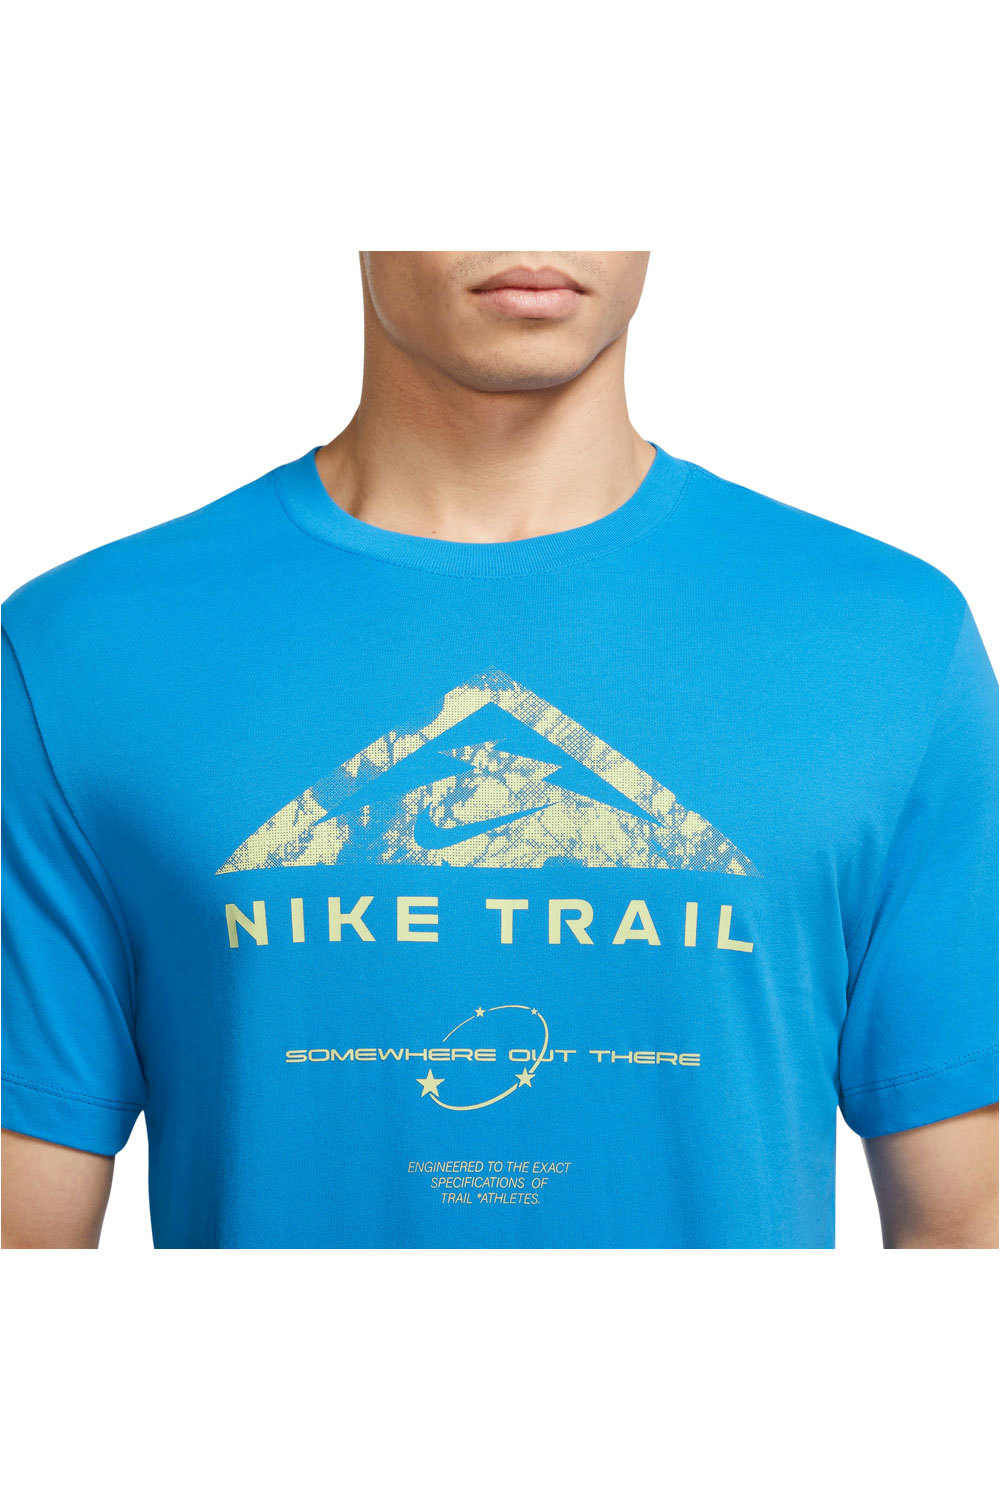 Nike camisetas trail running manga corta hombre M NK DF TEE RUN TRAIL vista detalle